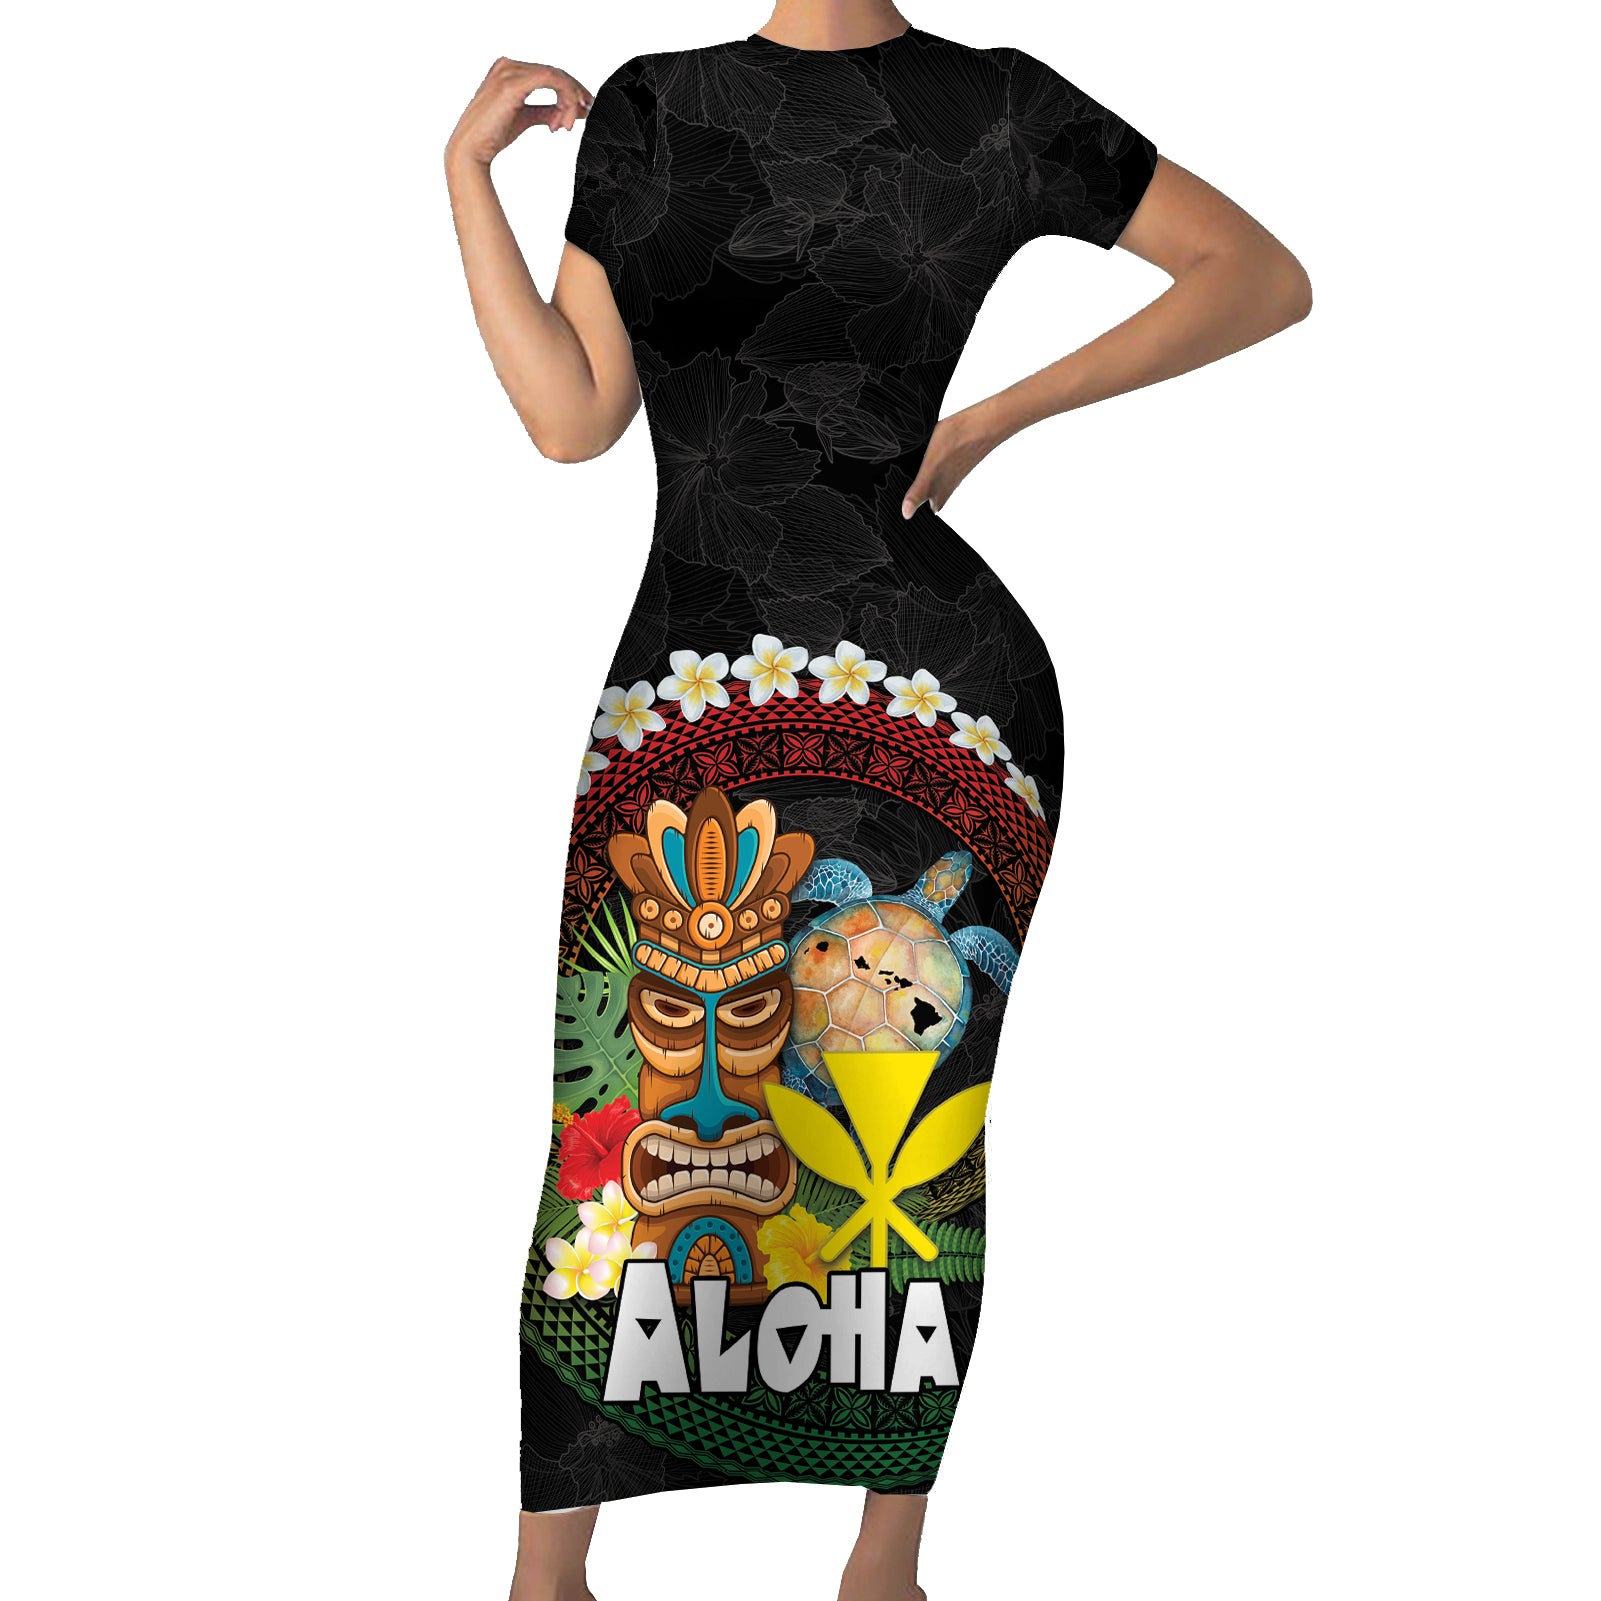 Aloha Hawaii Short Sleeve Bodycon Dress Kanaka Maoli with Polynesian Spiral Plumeria